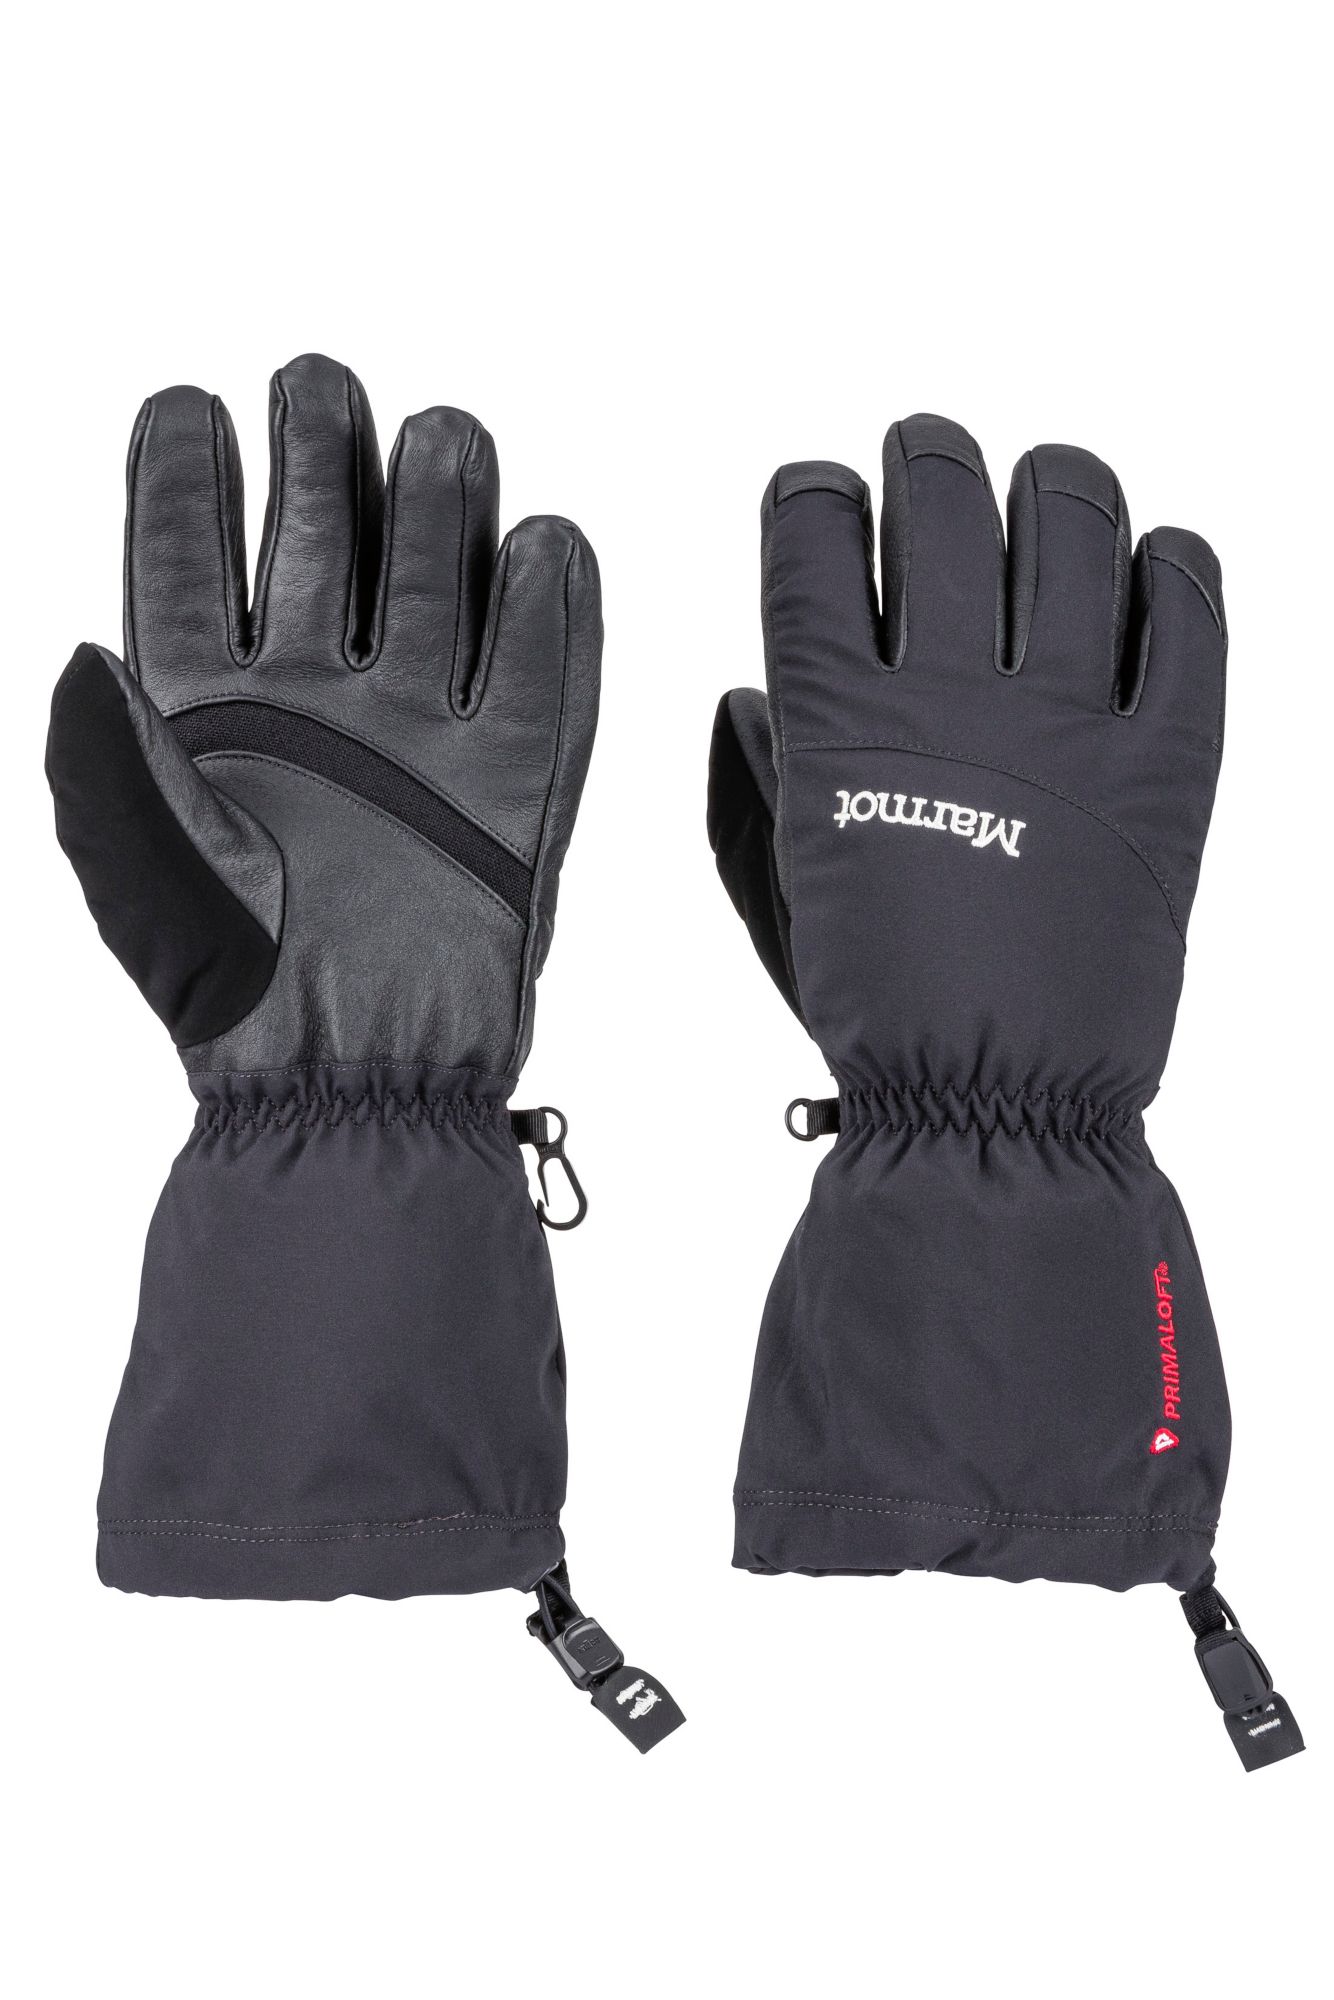 Women's Warmest Gloves